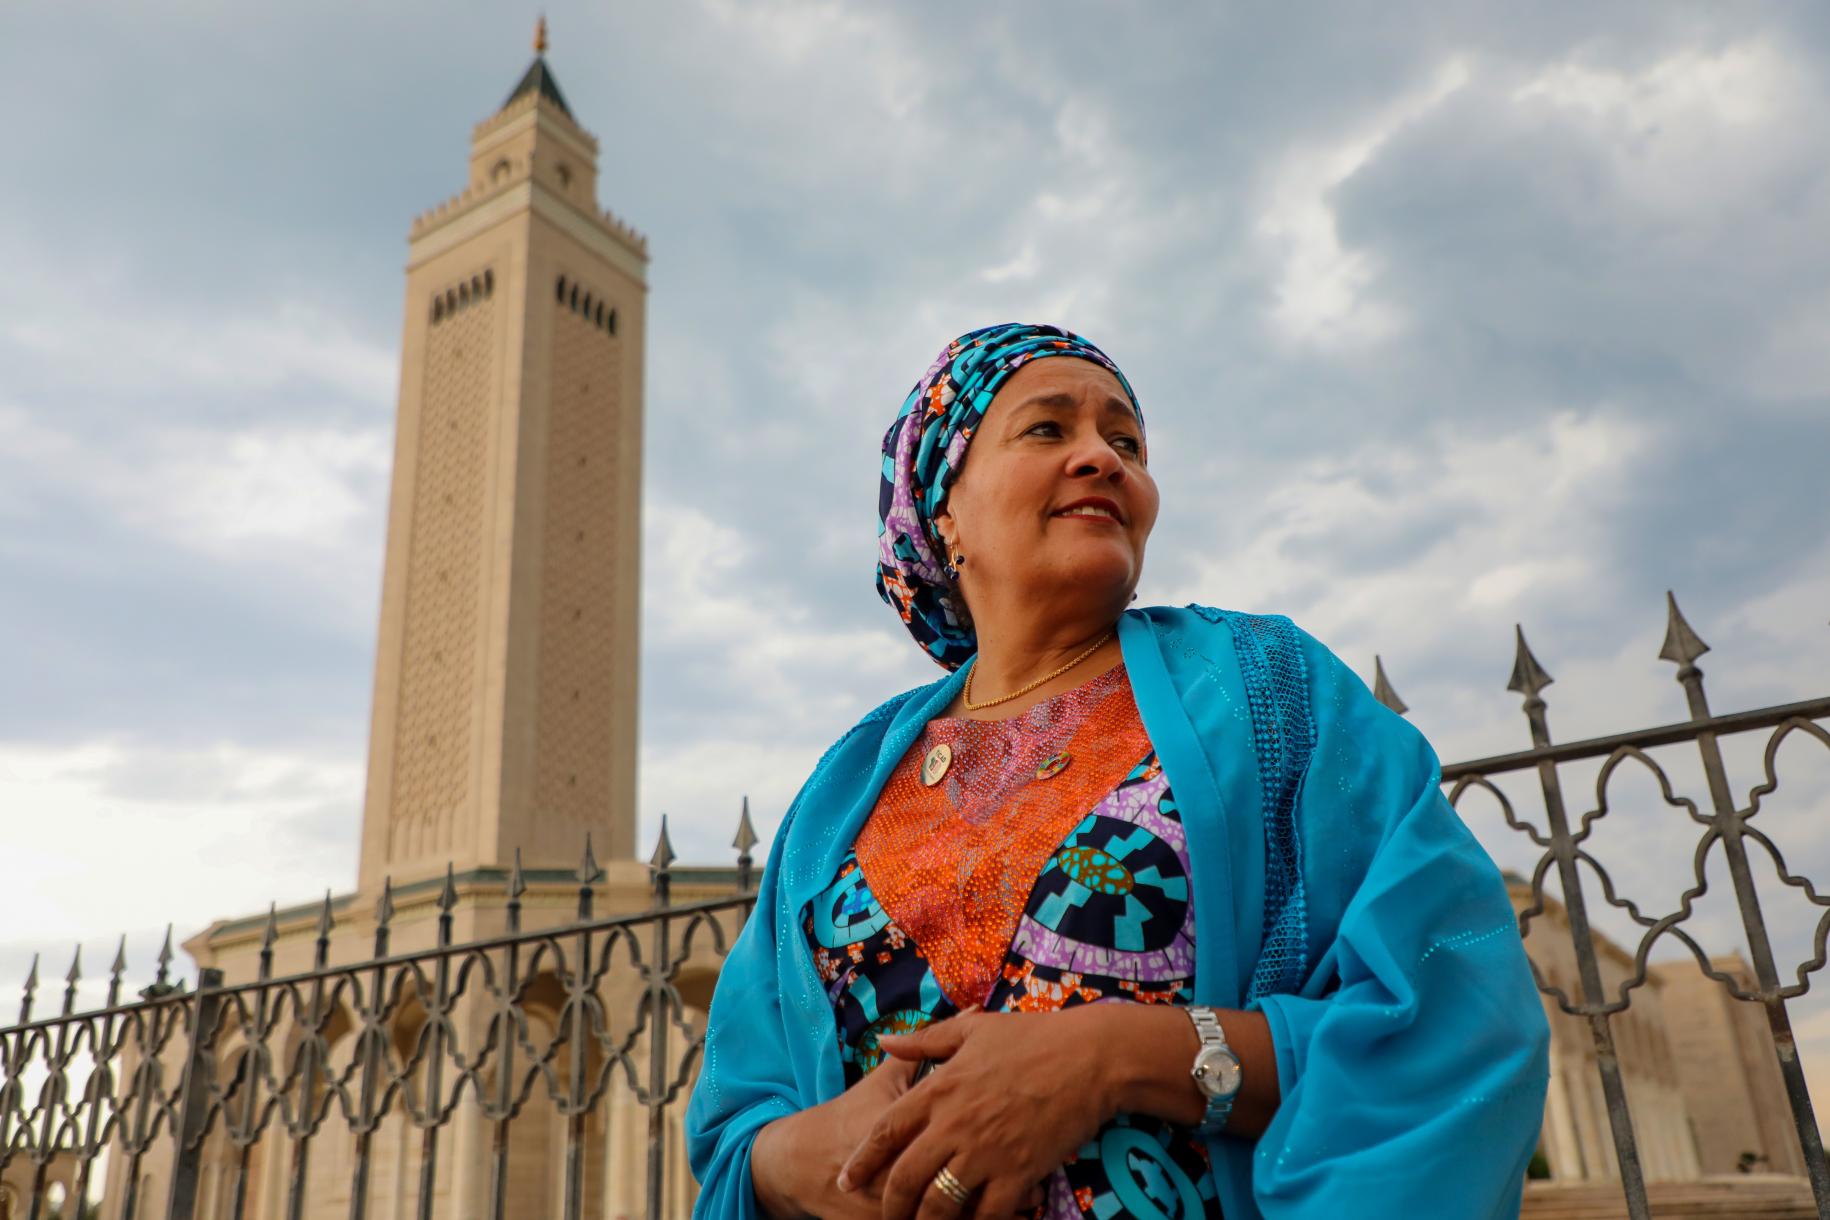 La Vicesecretaria General de las Naciones Unidas, Amina J. Mohammed, aprovechó su asistencia a la octava edición de la Conferencia Internacional de Tokio sobre el Desarrollo de África (TICAD 8), celebrada los días 27 y 28 de agosto de 2022 en Túnez, para visitar la mundialmente conocida capital púnica de Cartago, en las afueras de Túnez, donde se detuvo en la mezquita de Mâlik ibn Anas, en las inmediaciones de la basílica de Damous El Karita.